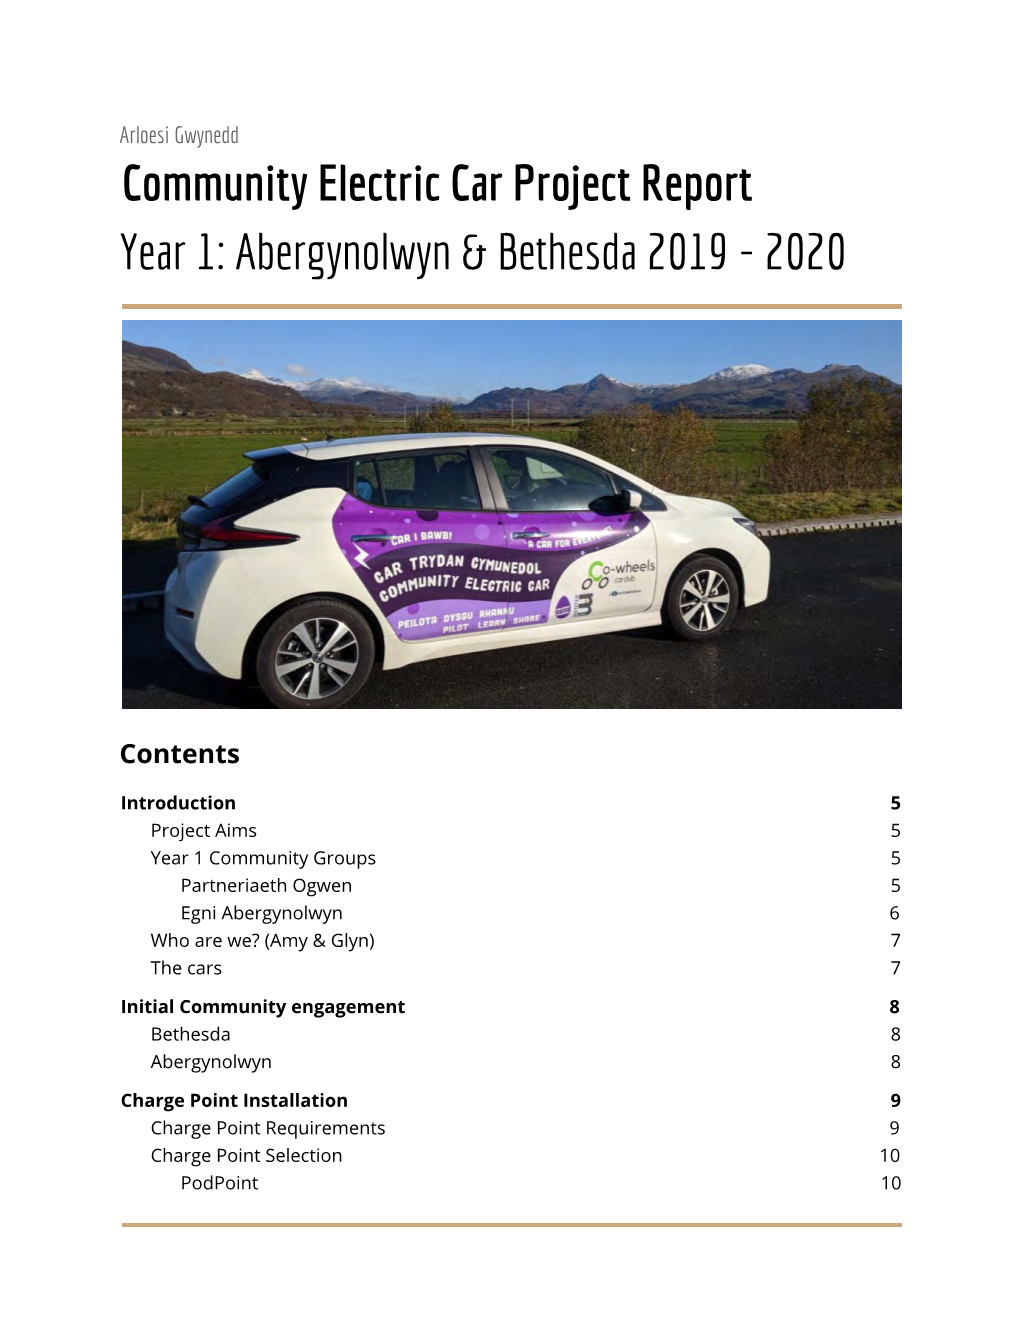 Community Electric Car Project Report Year 1: Abergynolwyn & Bethesda